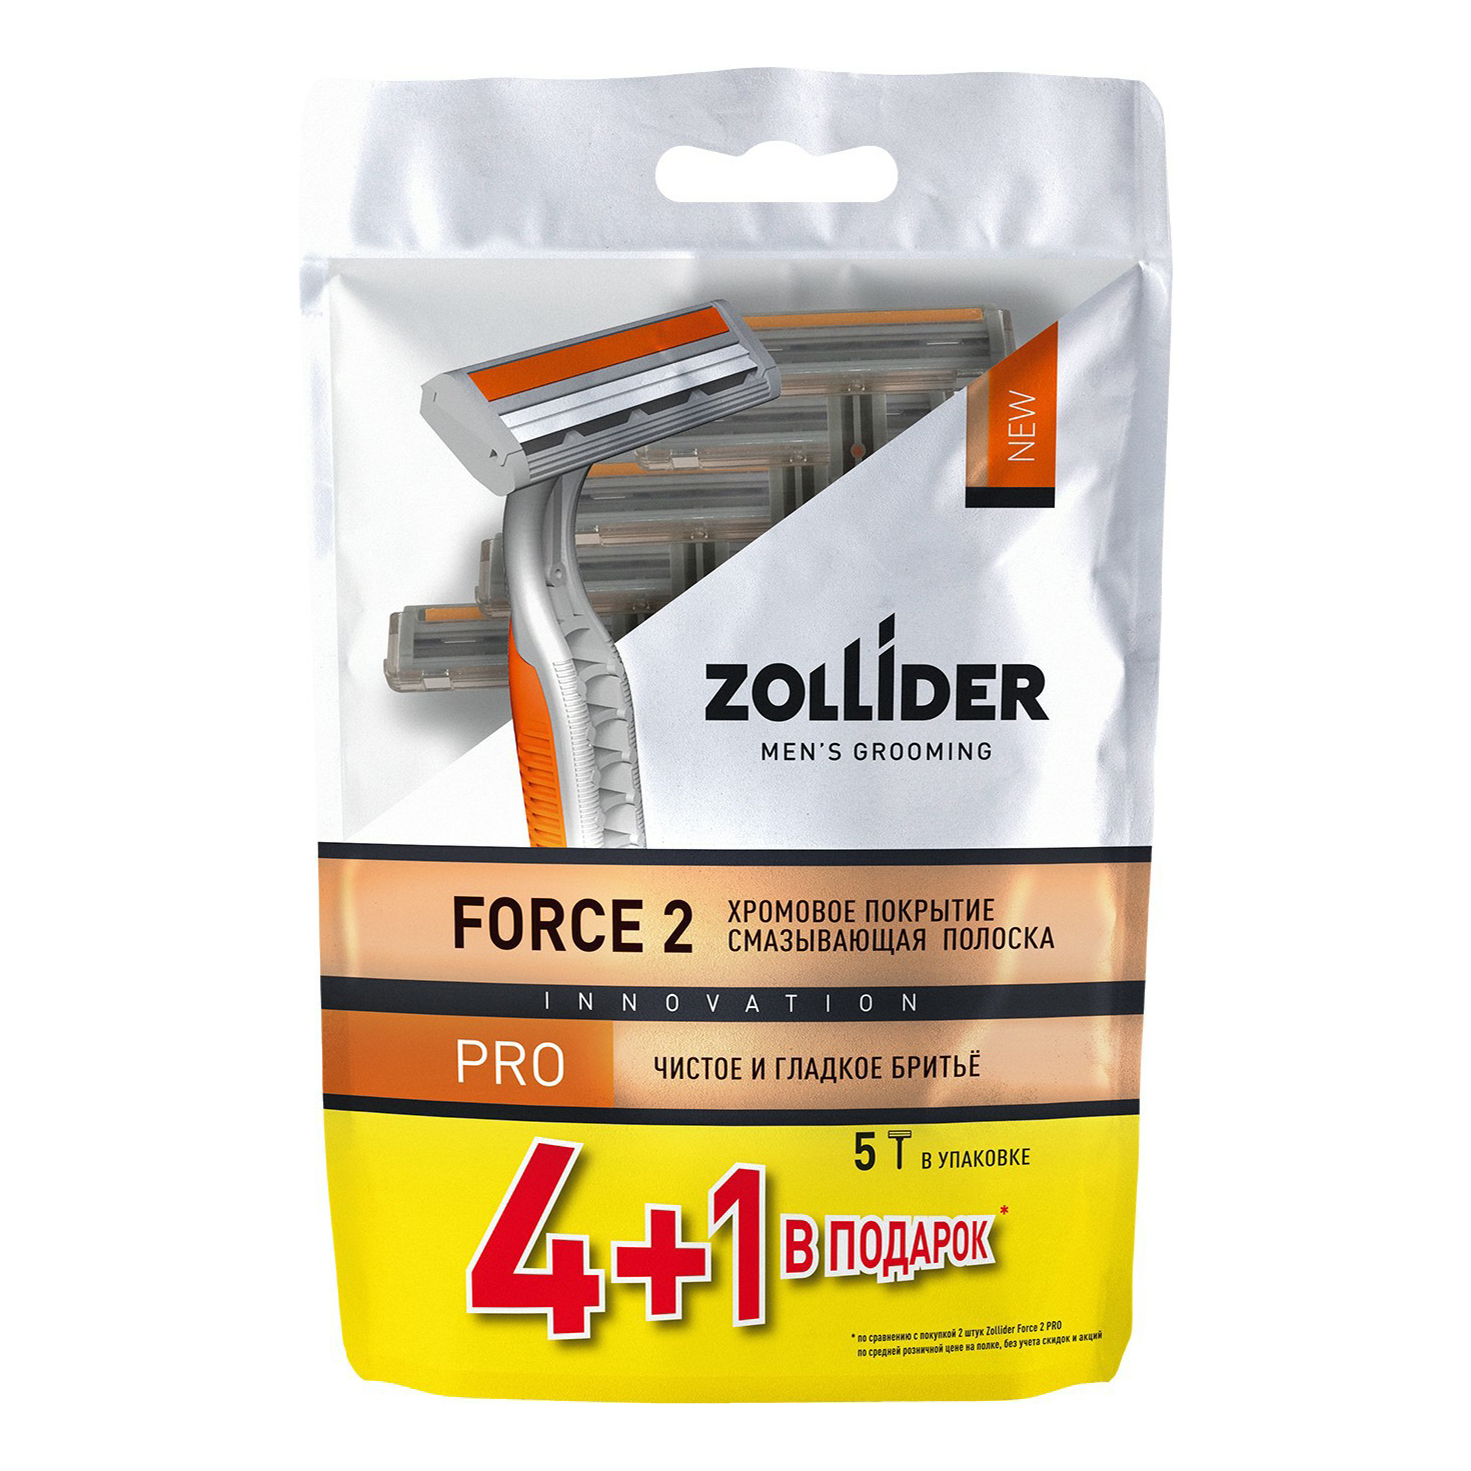 Бритвенные станки мужские Zollider Force 2 Pro одноразовые с двойными лезвиями 4 + 1 шт бритвенные станки мужские zollider force 3 max одноразовые с тройными лезвиями 4 1 шт